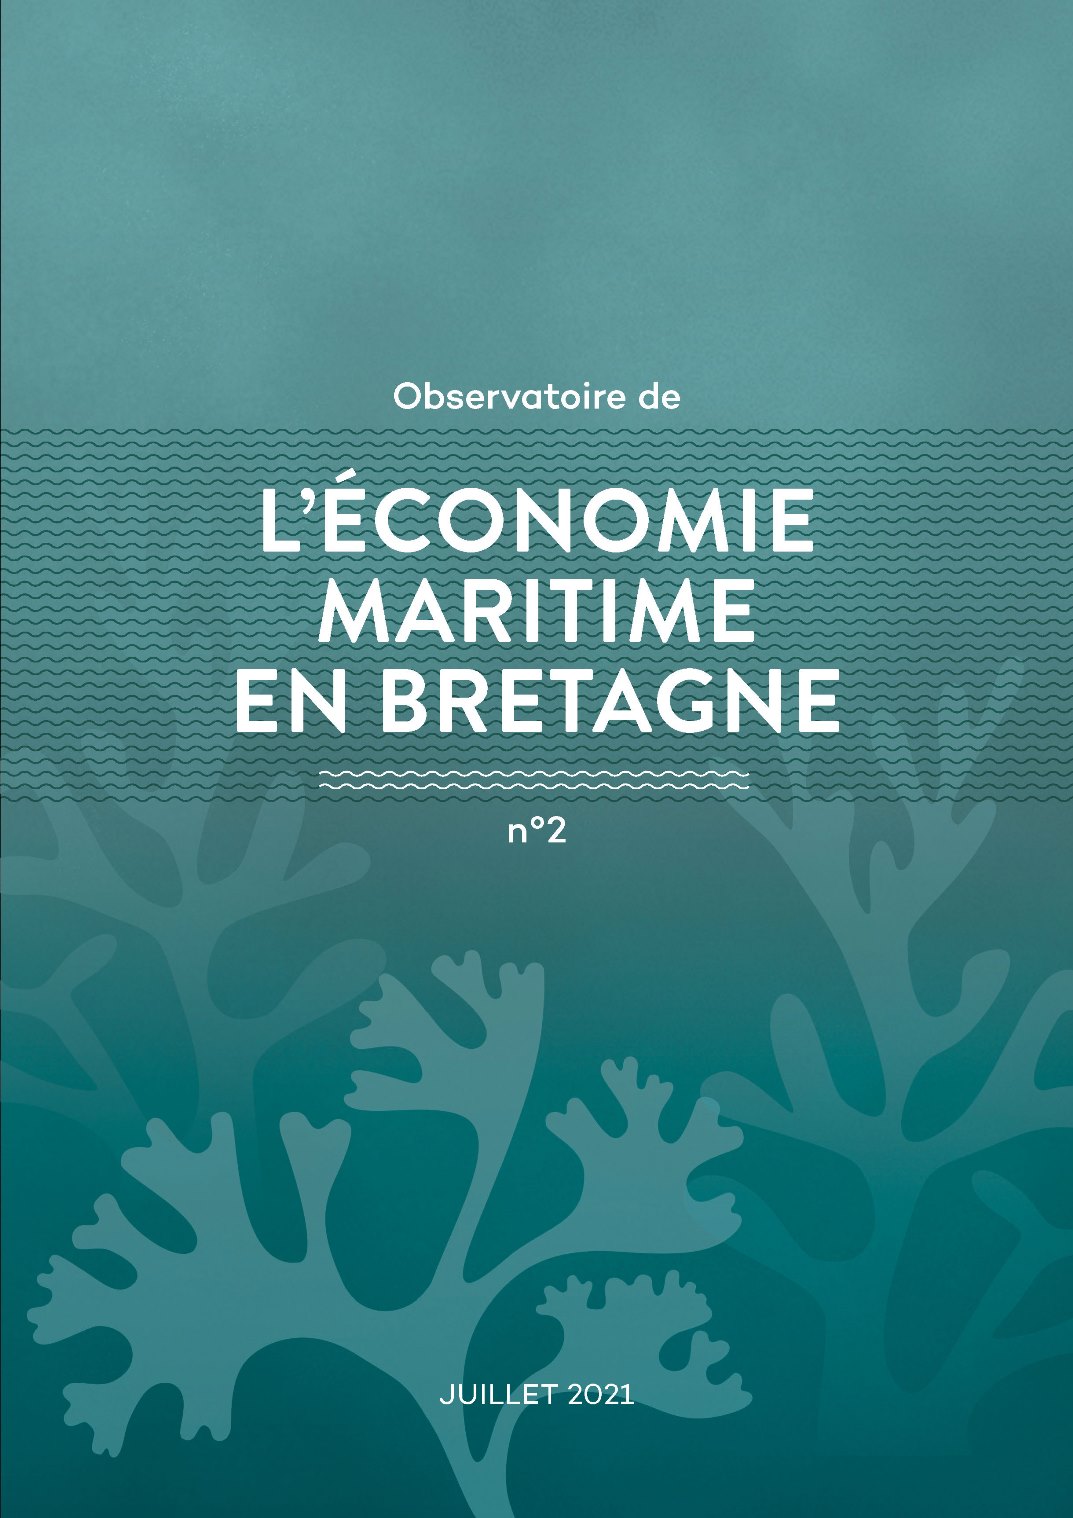 L'économie maritime en Bretagne. Juillet 2021